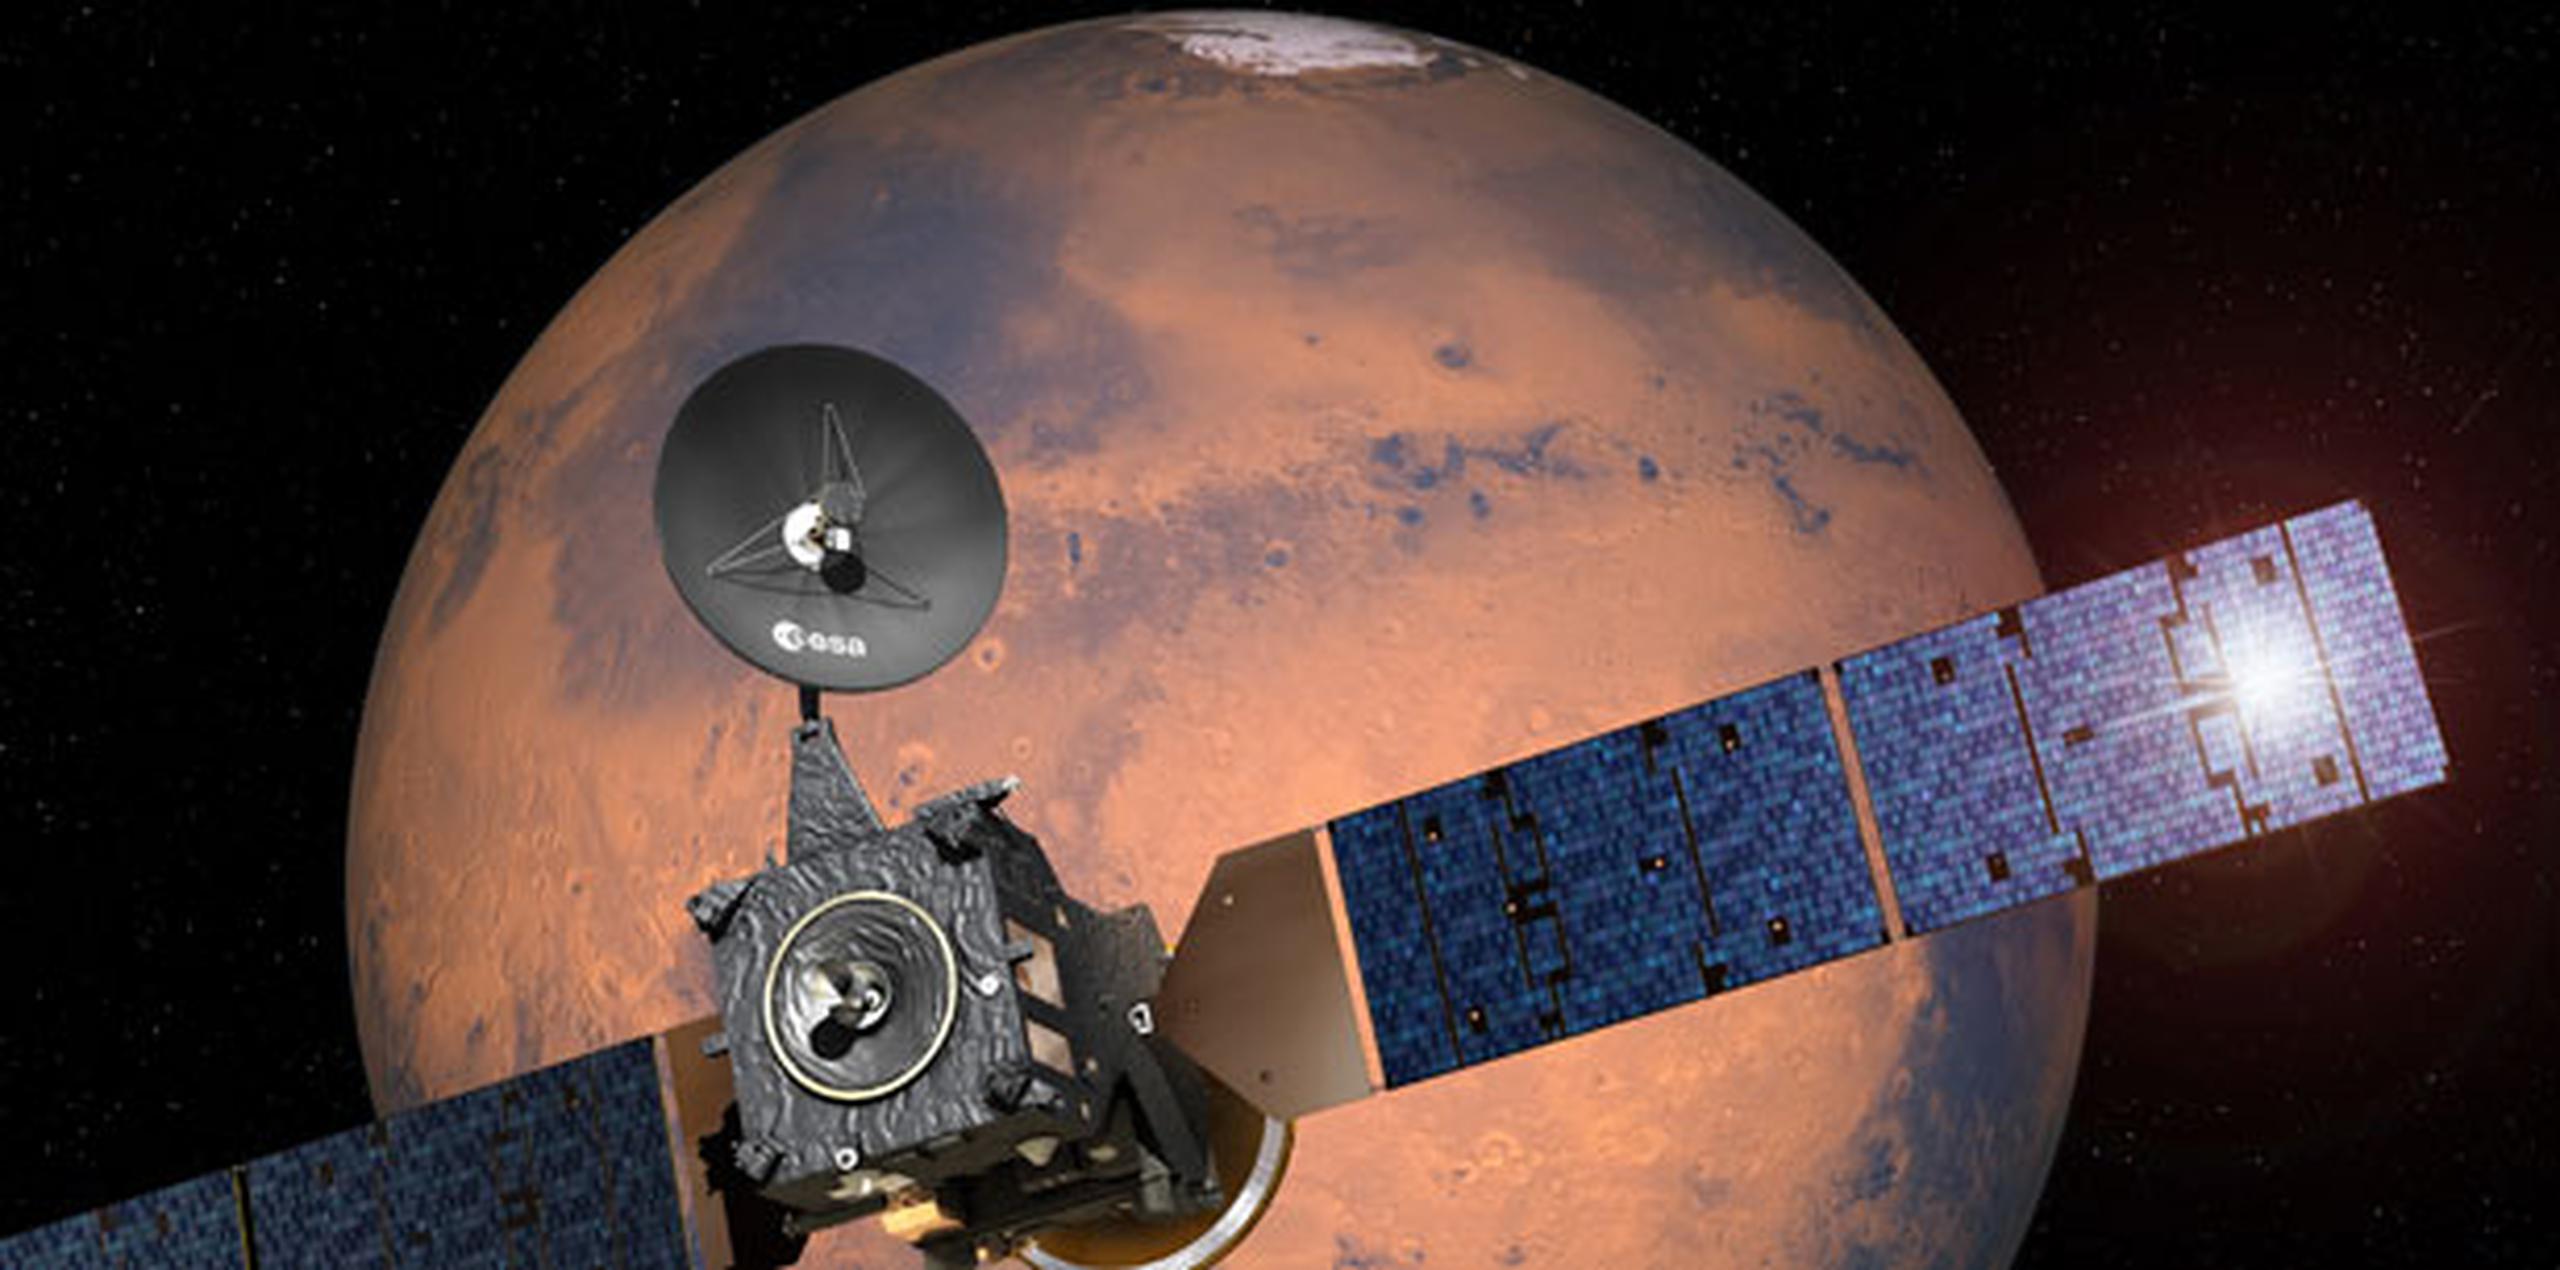 Si se descubre vida en Marte, ello despertaría la interrogante sobre si se deben intentar viajes tripulados al planeta vecino, informó Mark McCaughrean, asesor científico senior de la ESA. (AP)